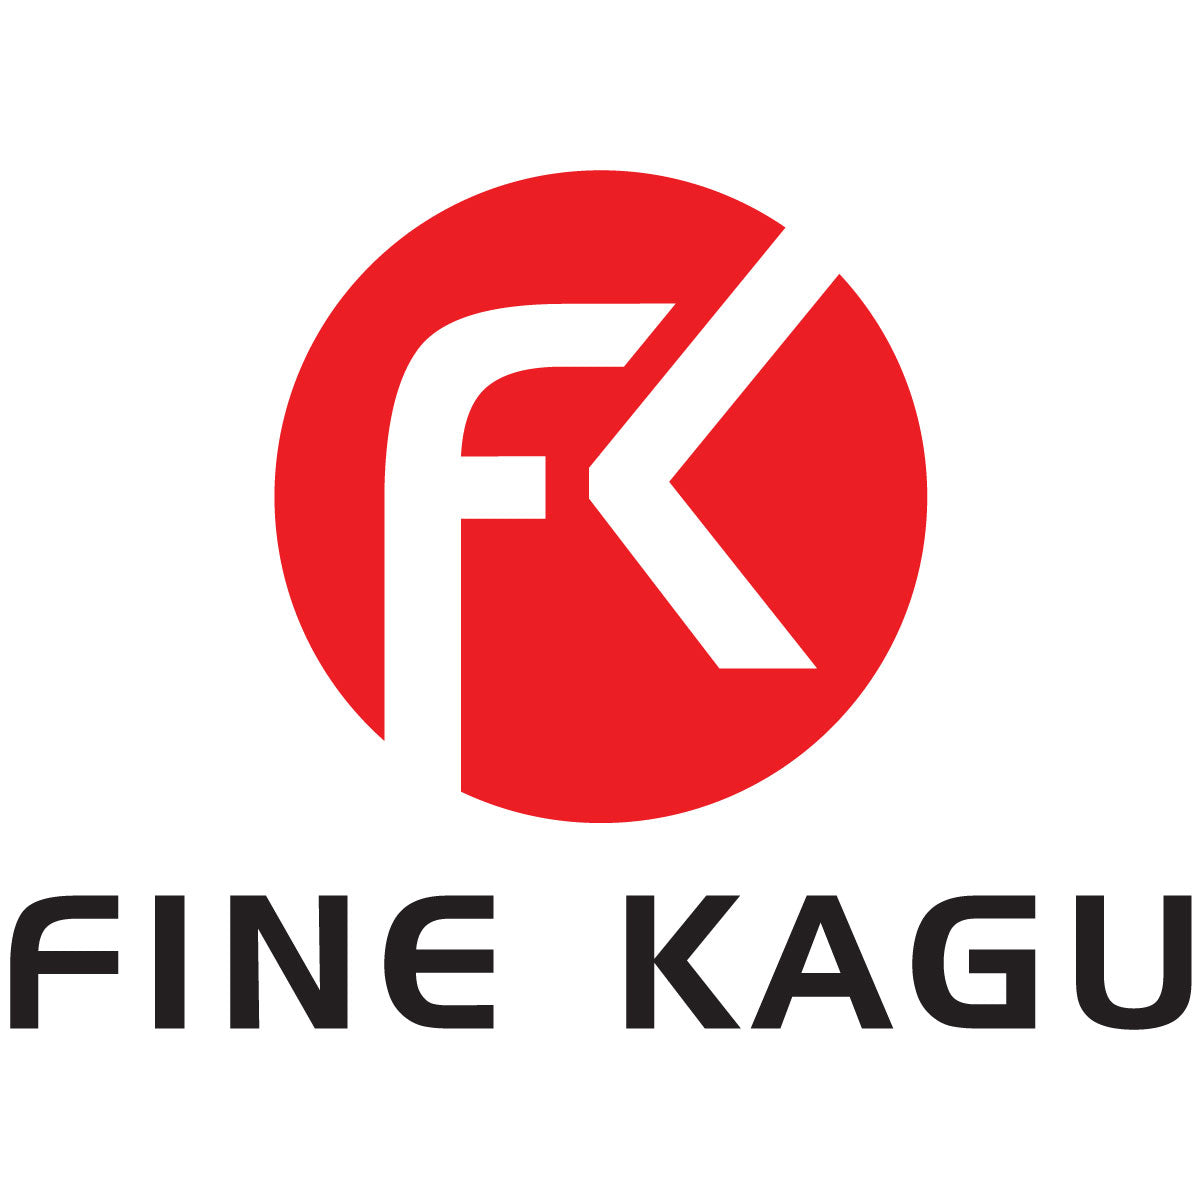 FINE KAGU 公式